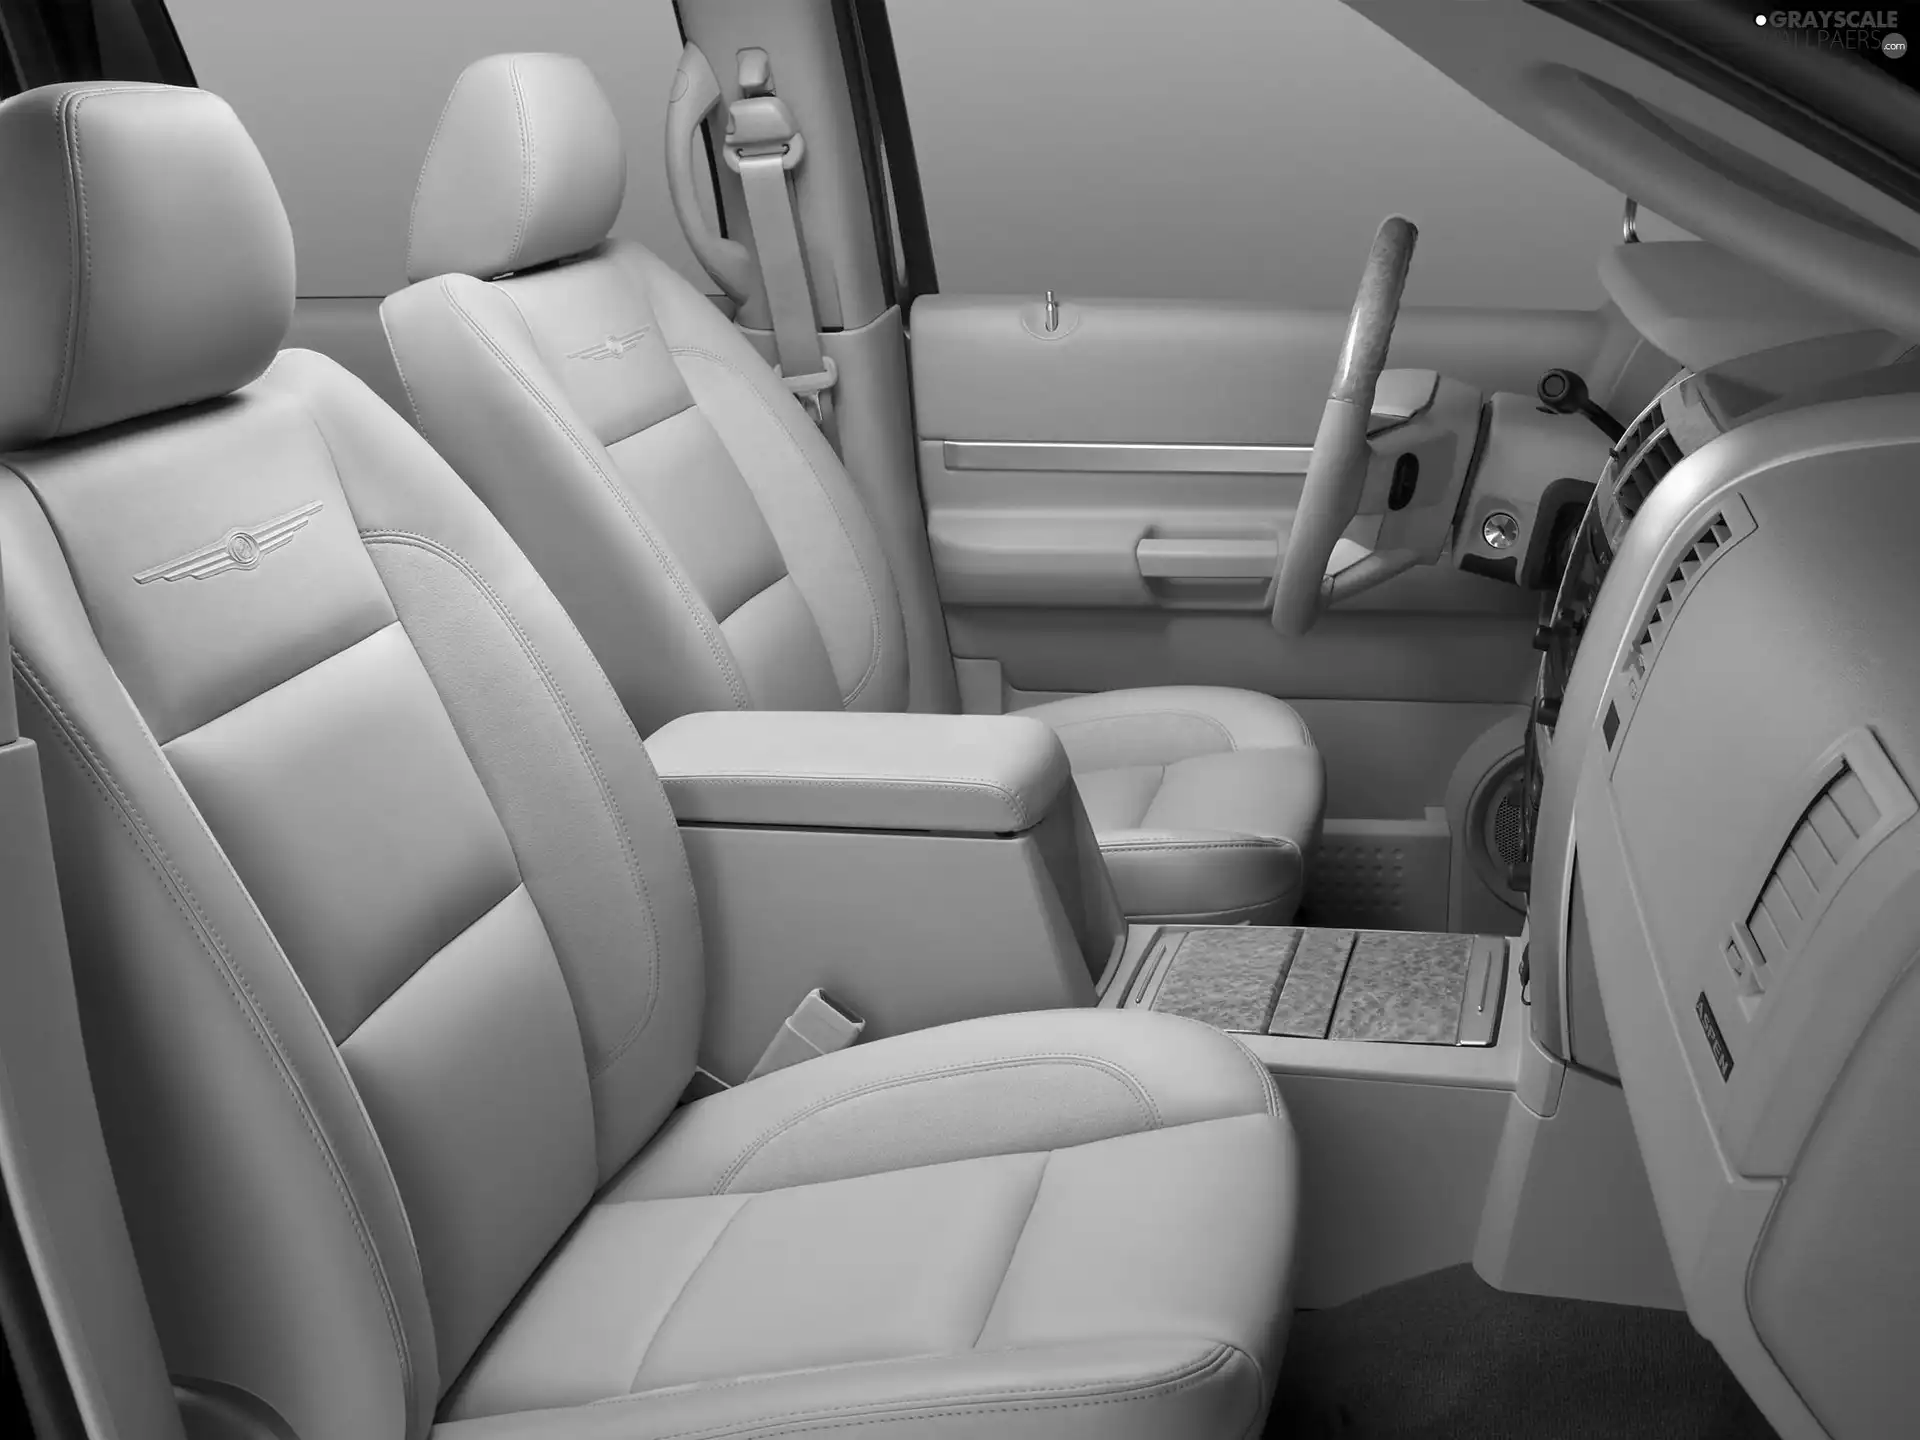 Chrysler Aspen, seats